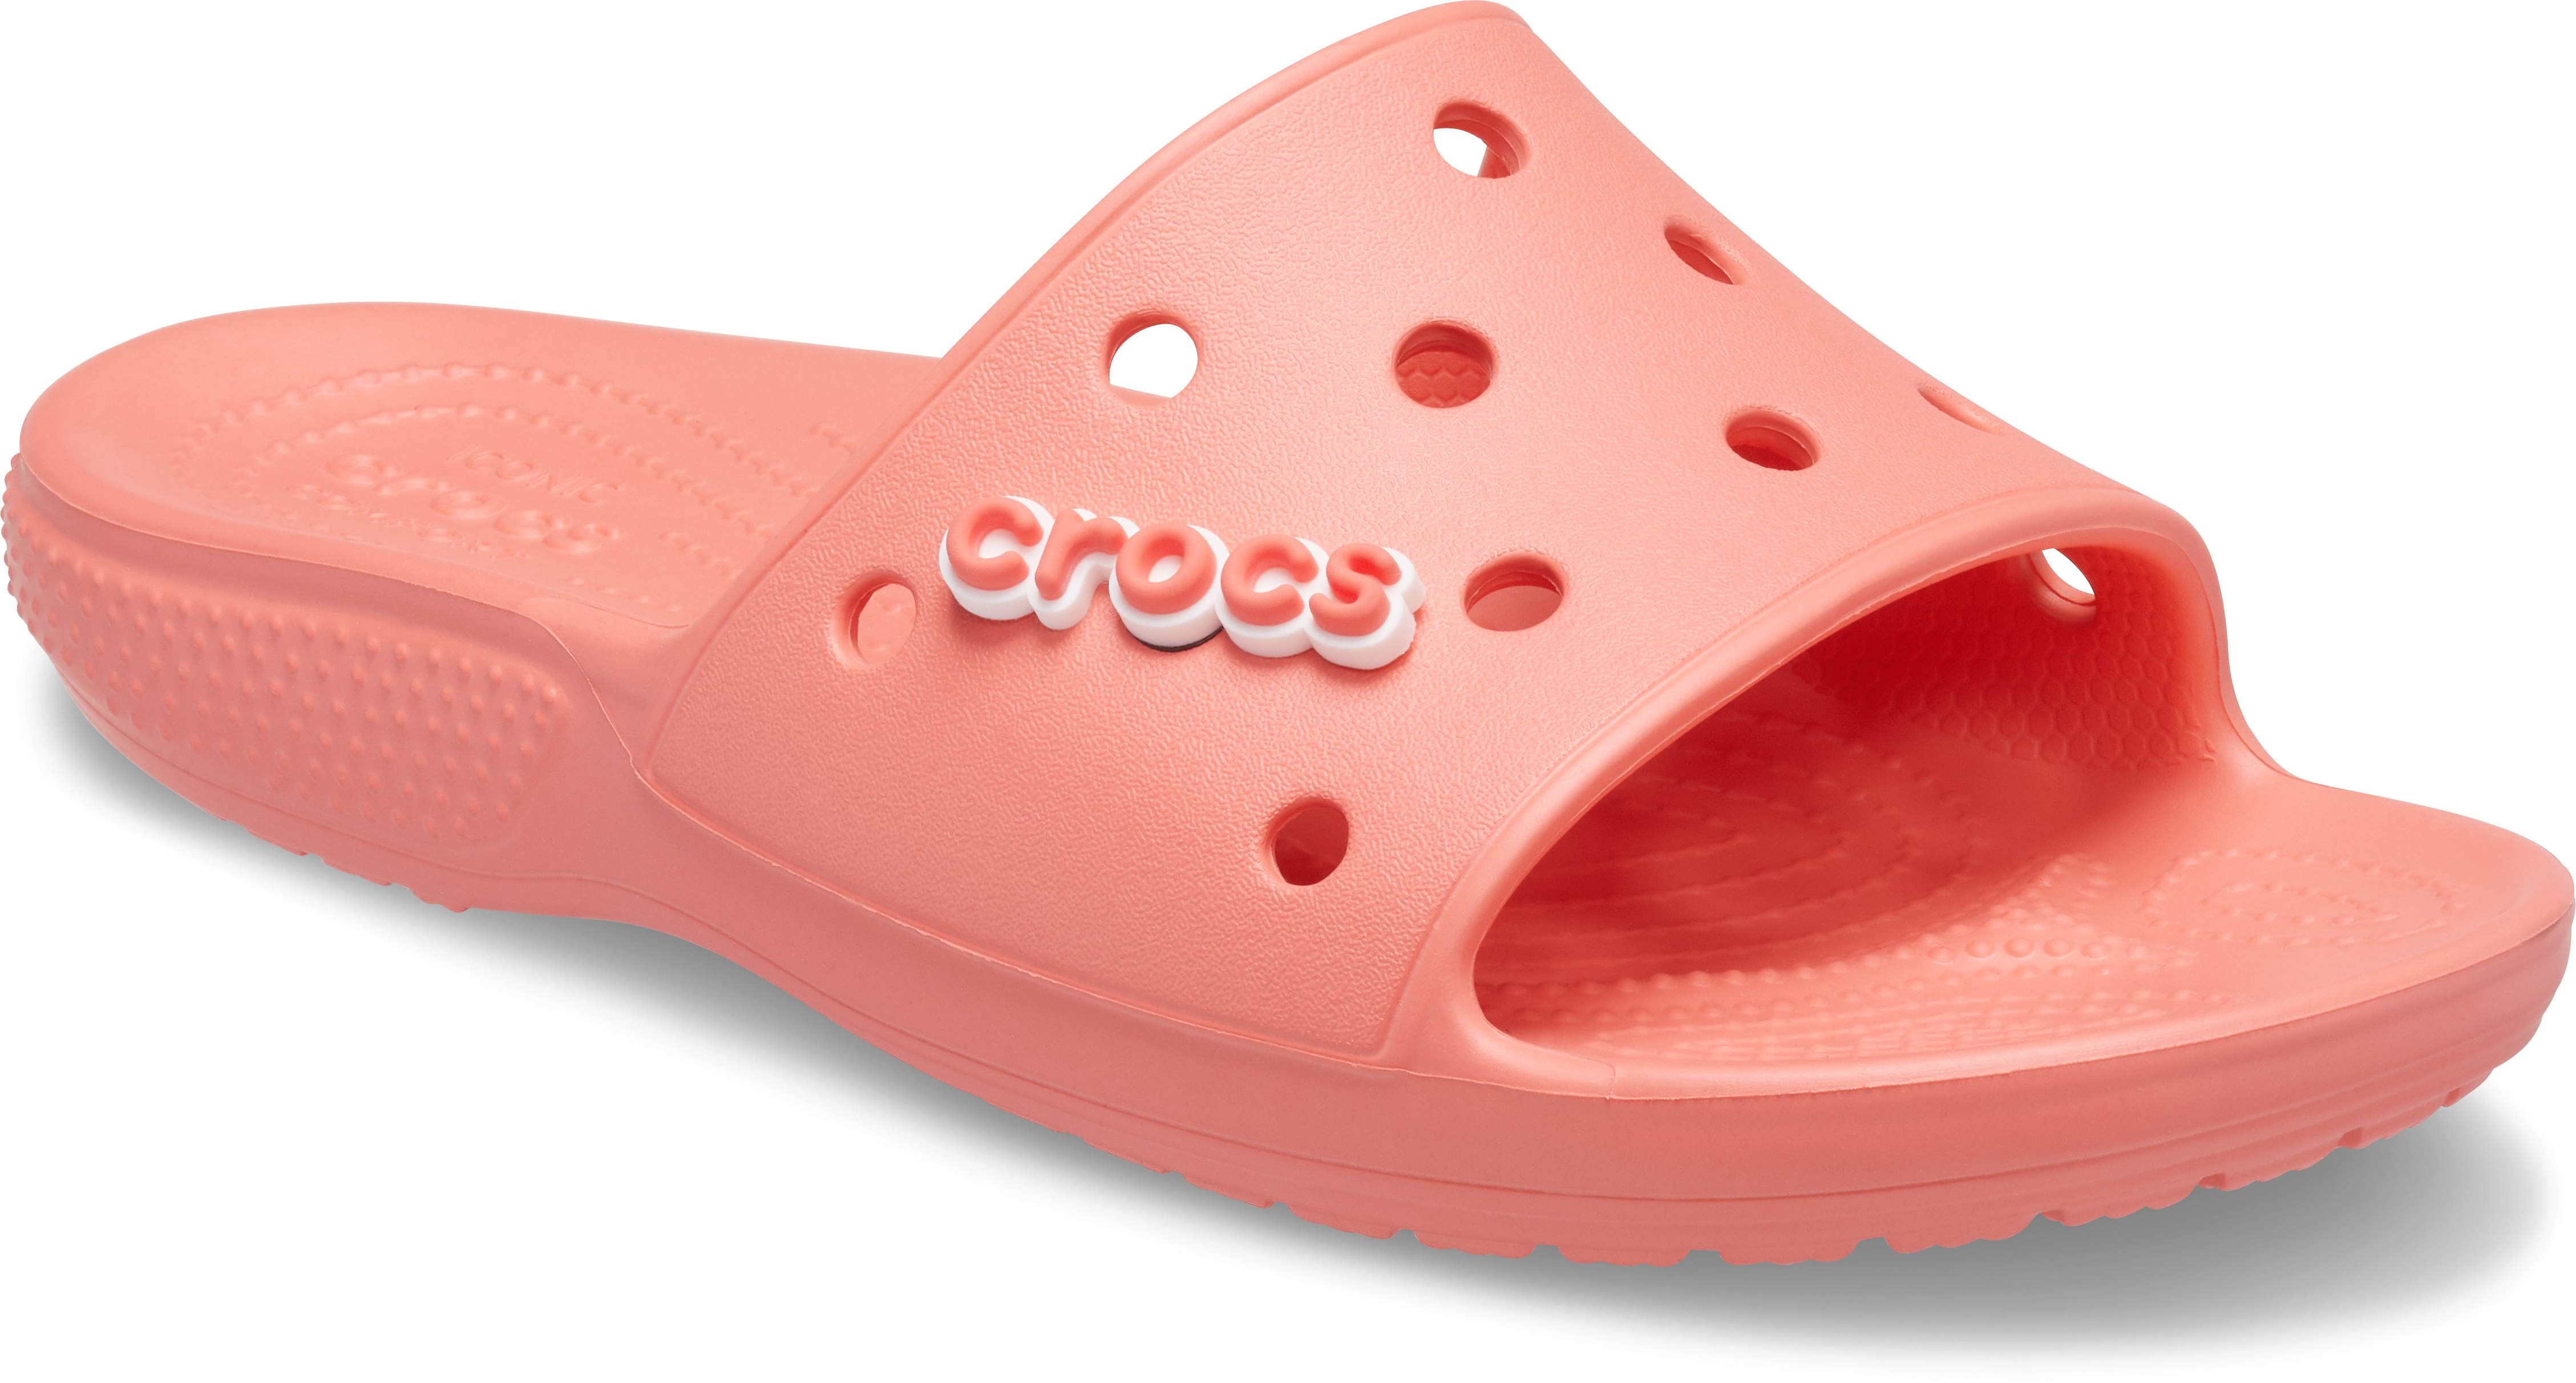 crocs slide on